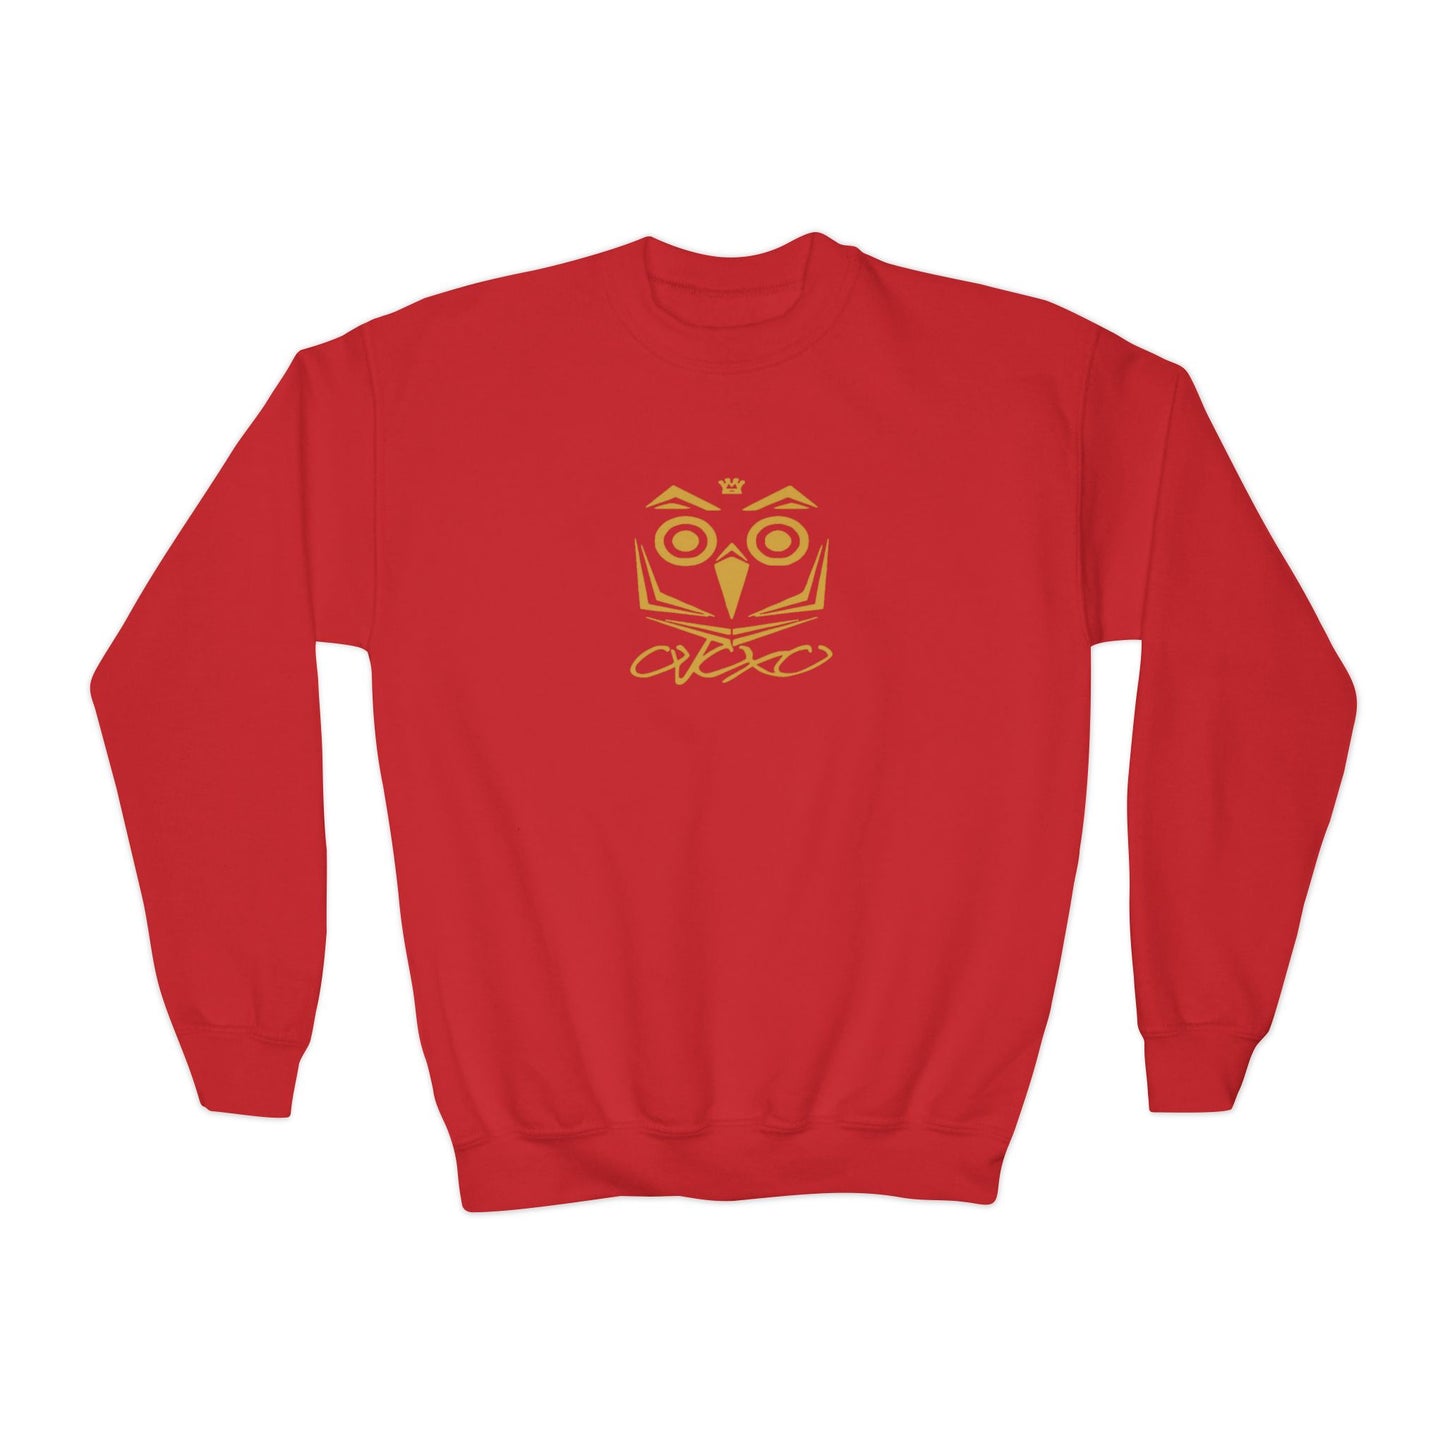 OVOXO Youth Sweatshirt